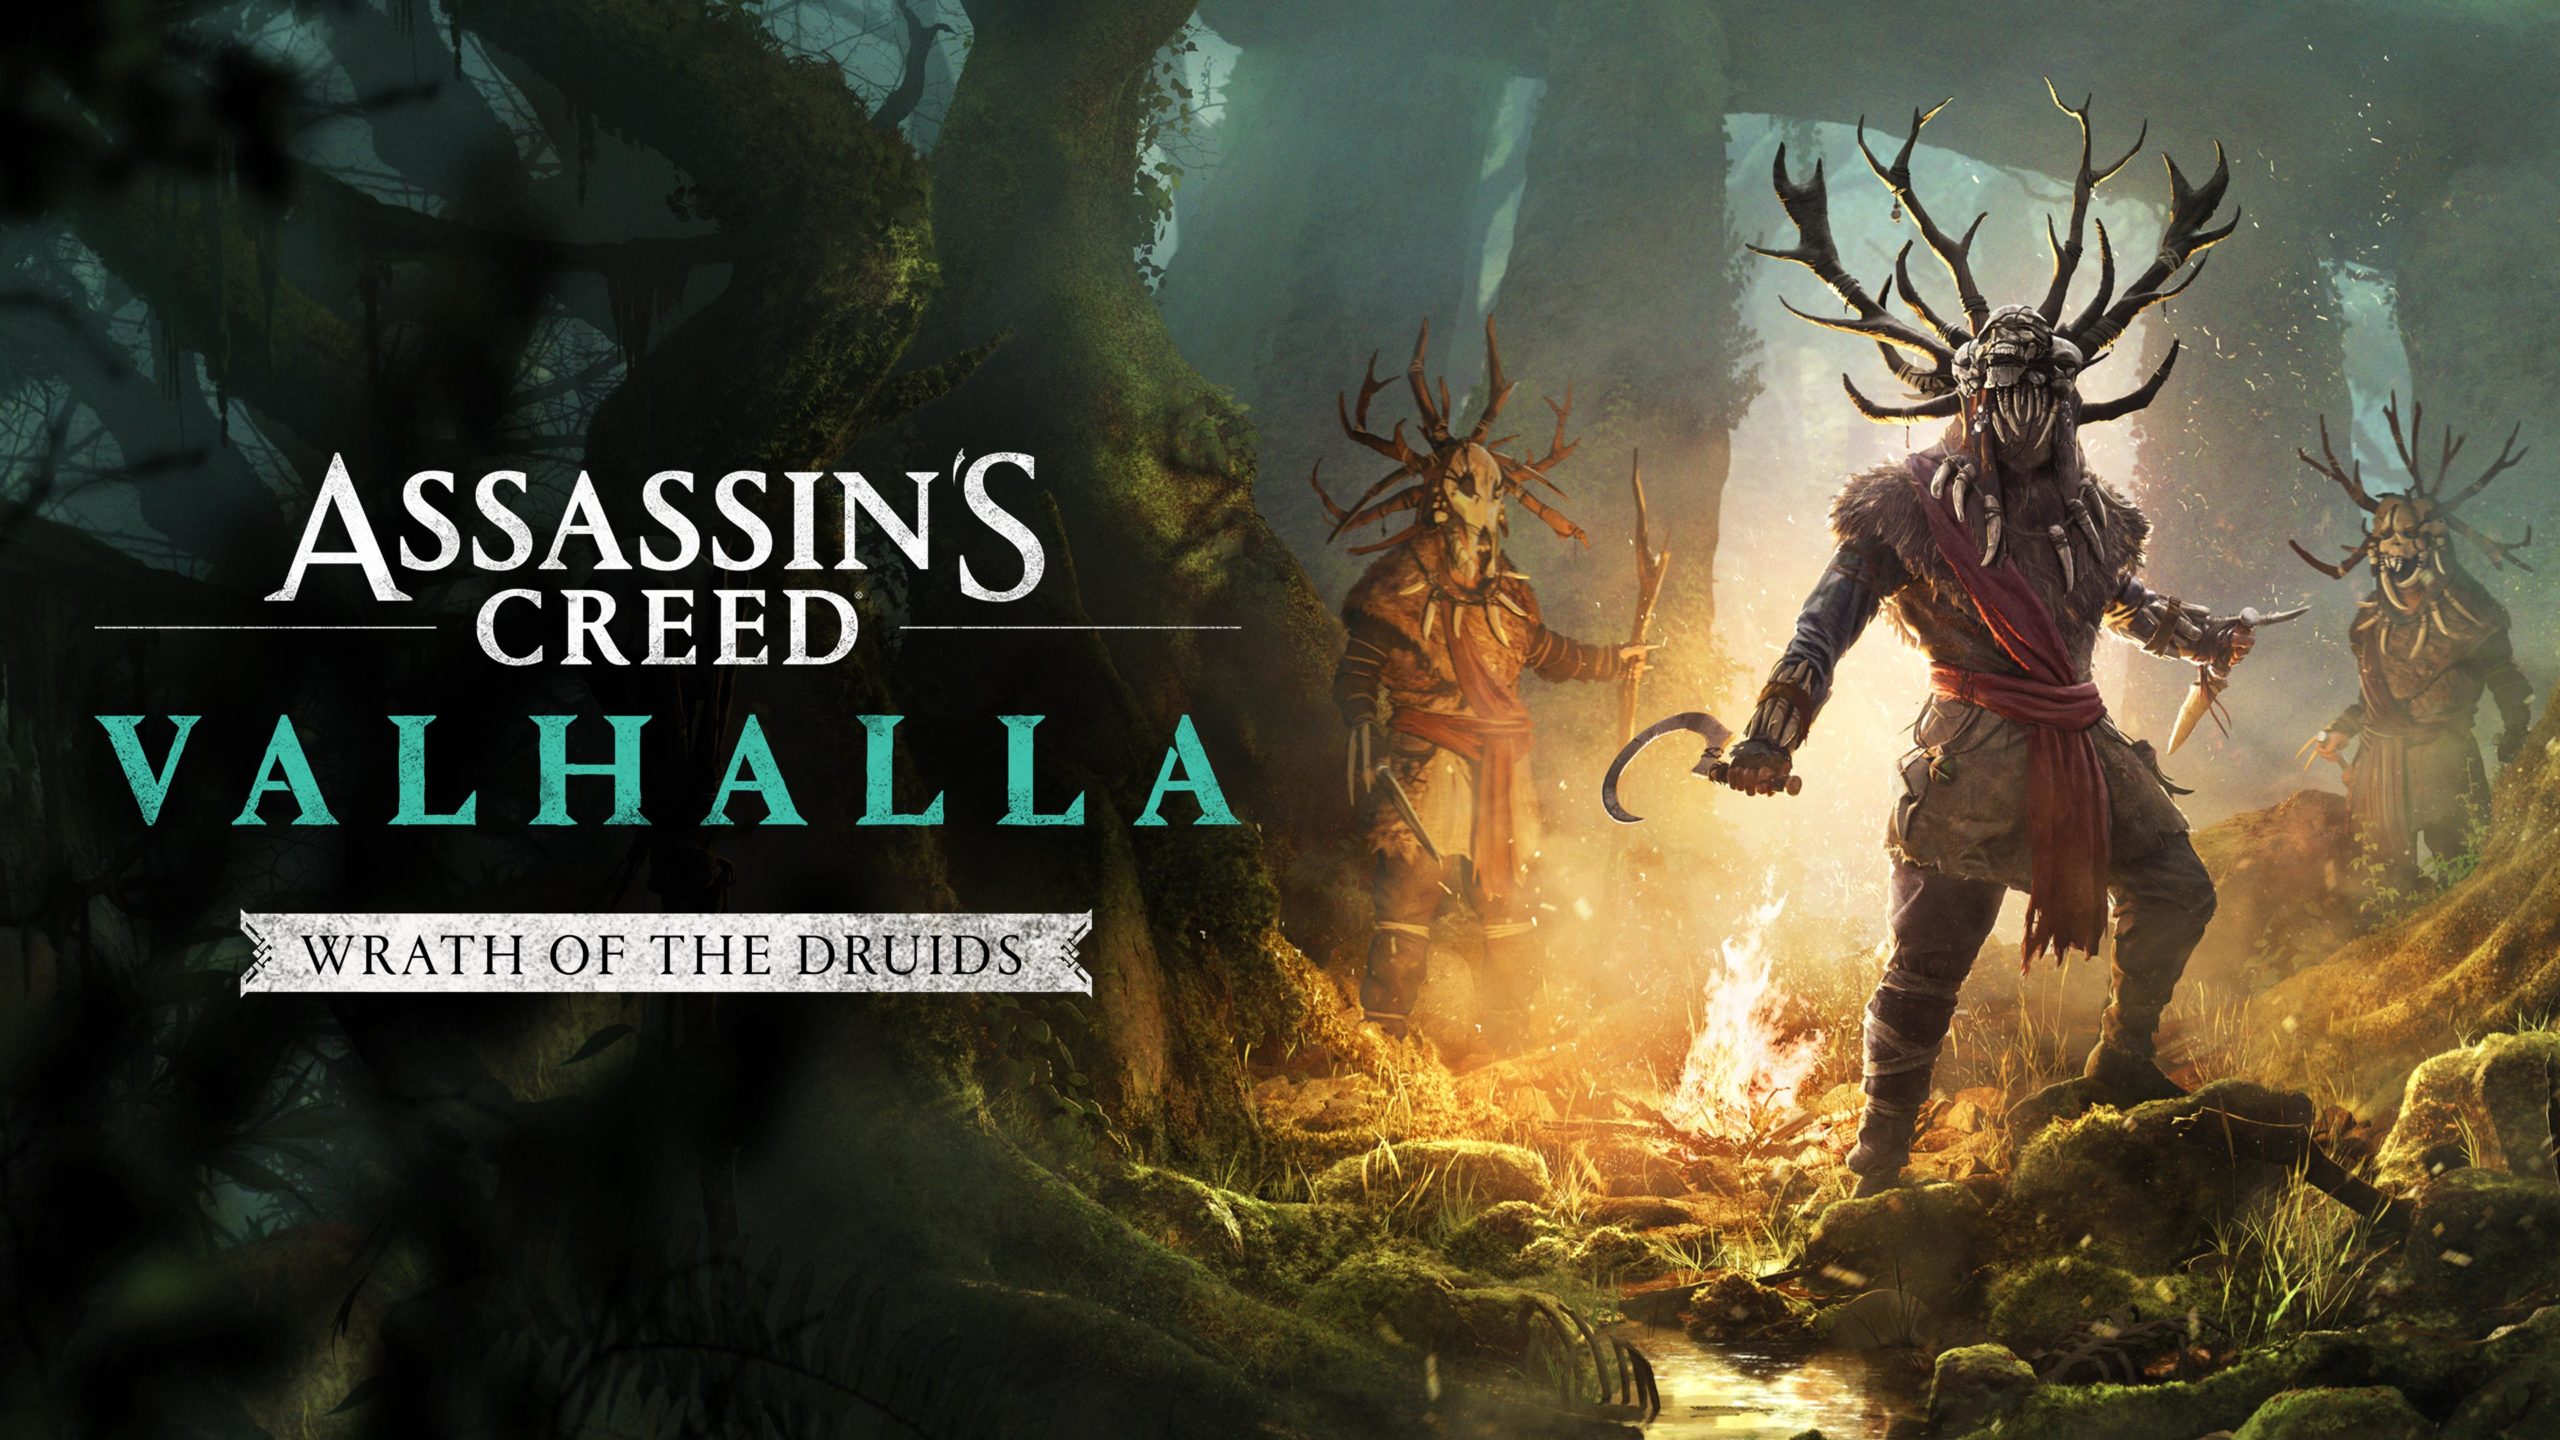 Itt nem a kobold hozza az aranyat – Assassin’s Creed Valhalla: Wrath of the Druids bemutató